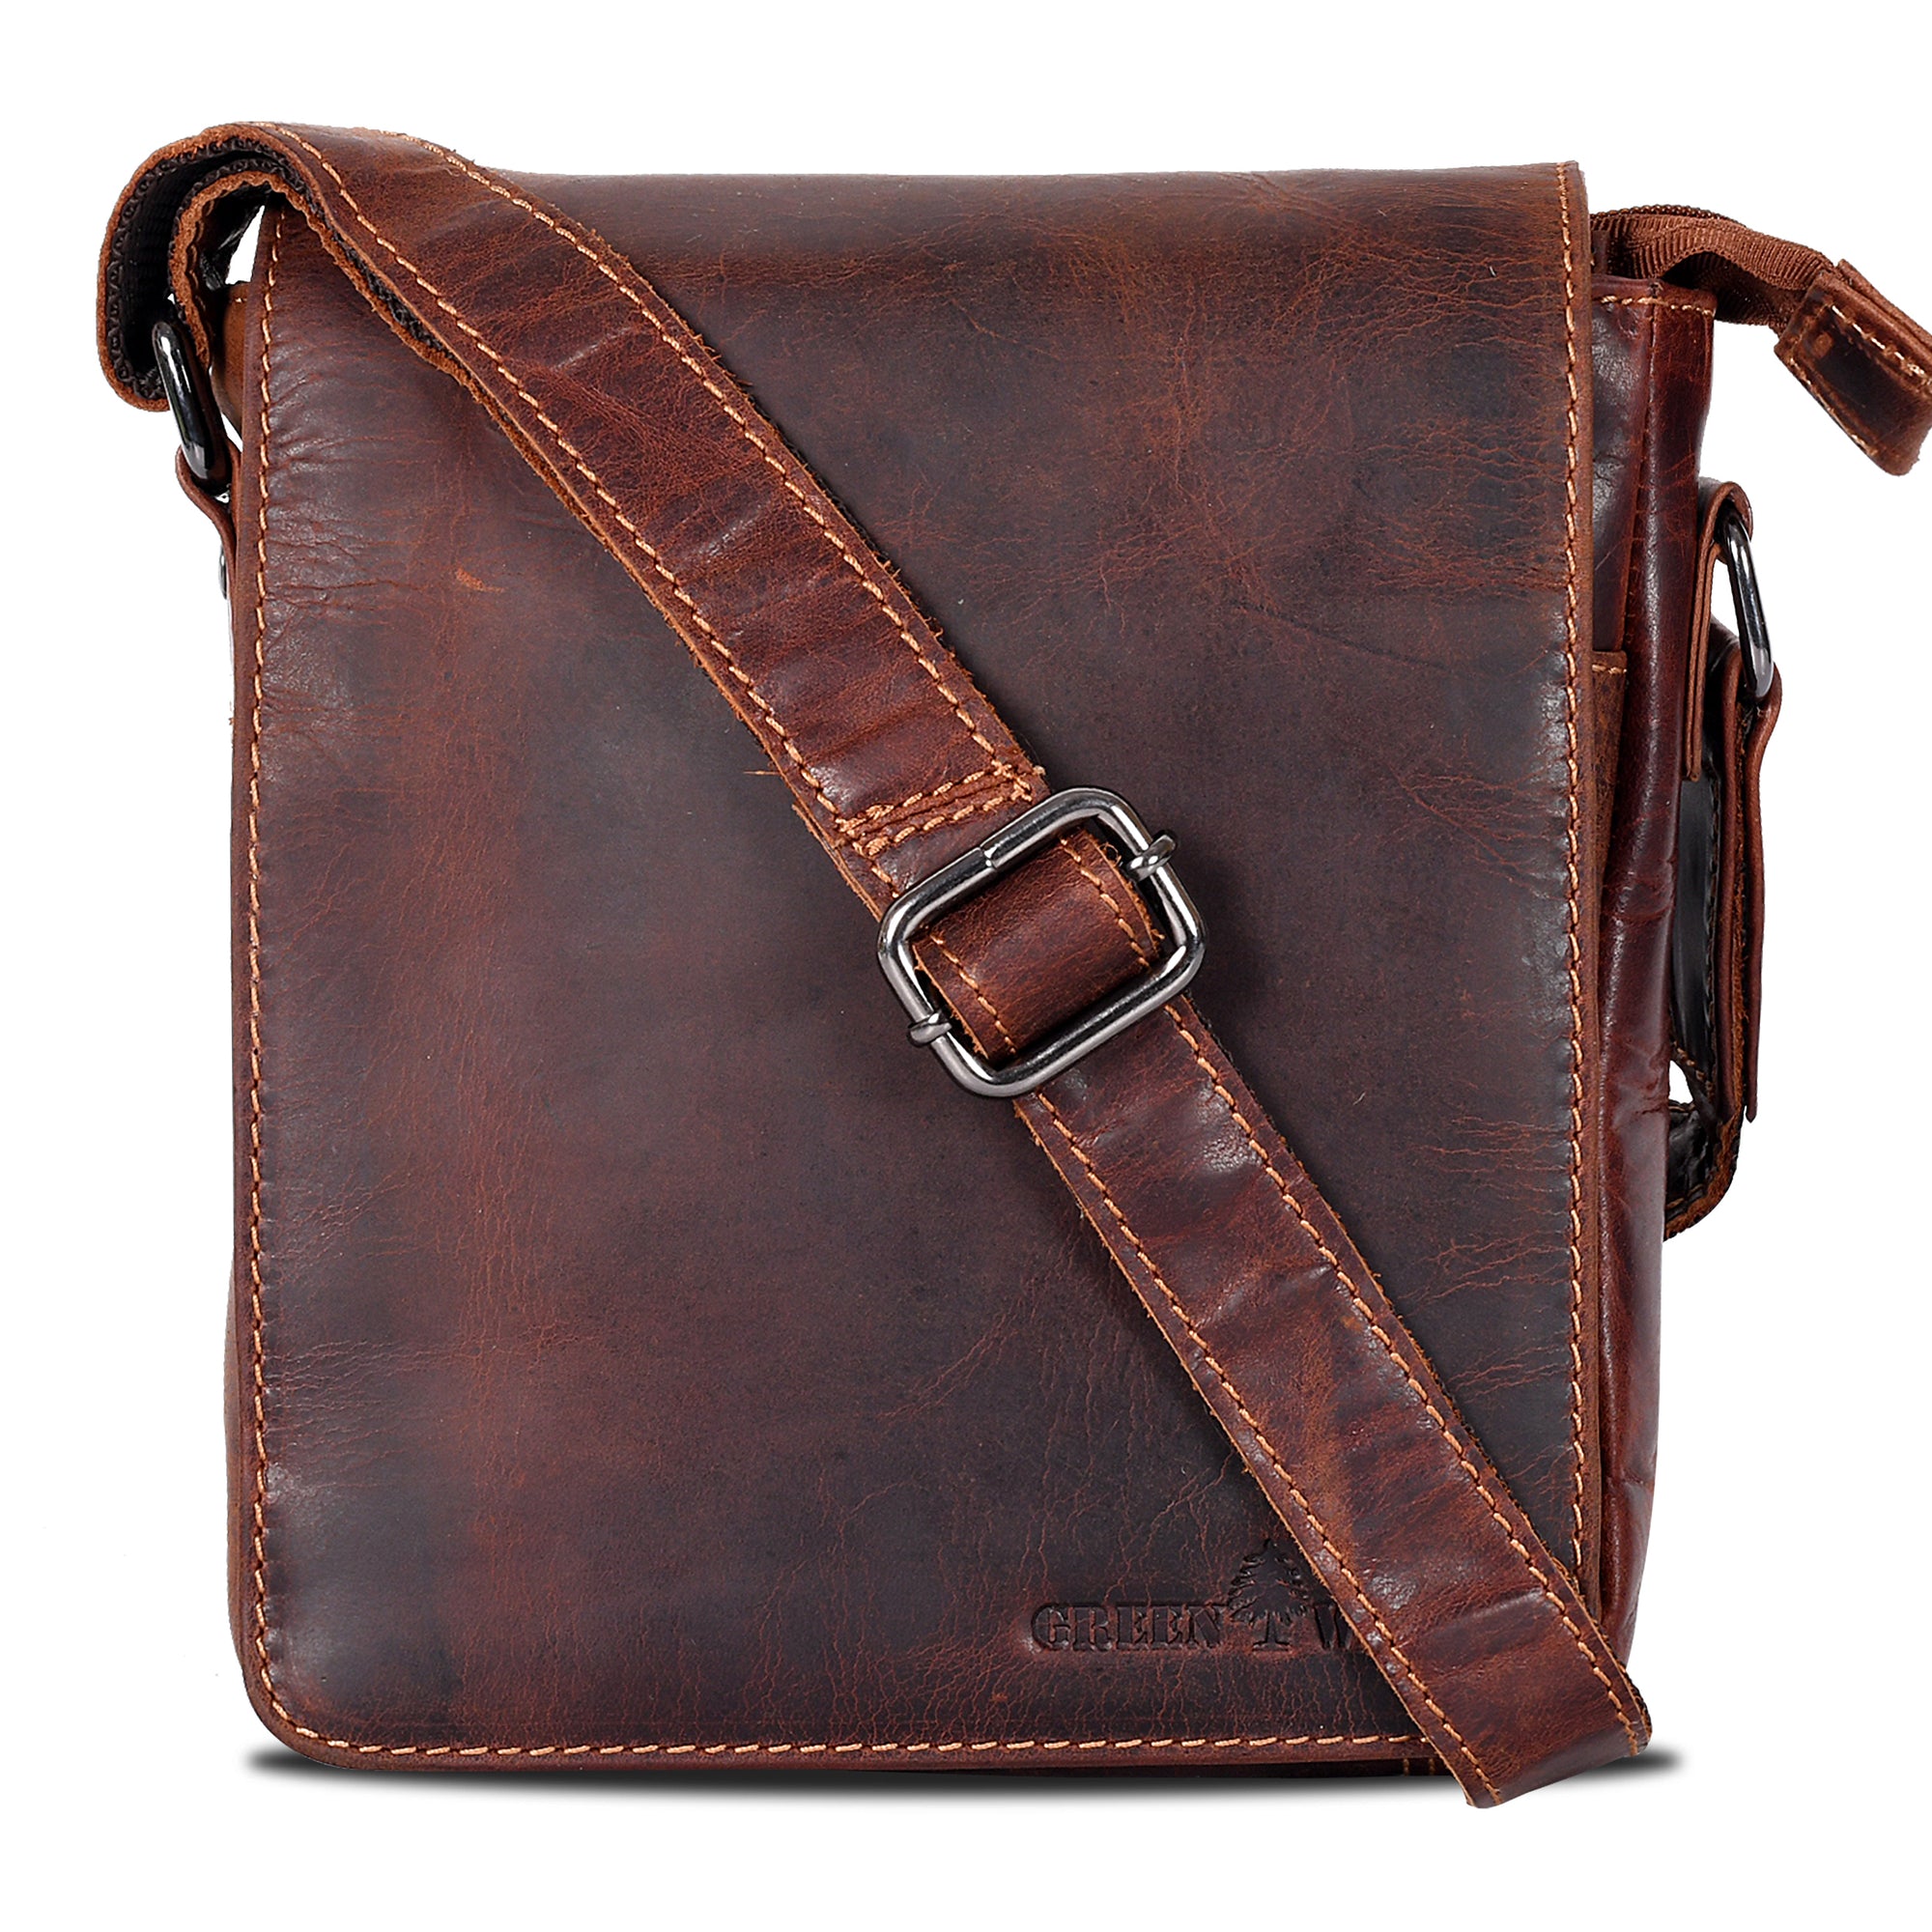 Leather Shoulder Bag Luna - Sandel - Leather Greenwood Bag | The Greenwood Leather Online Shop Australia